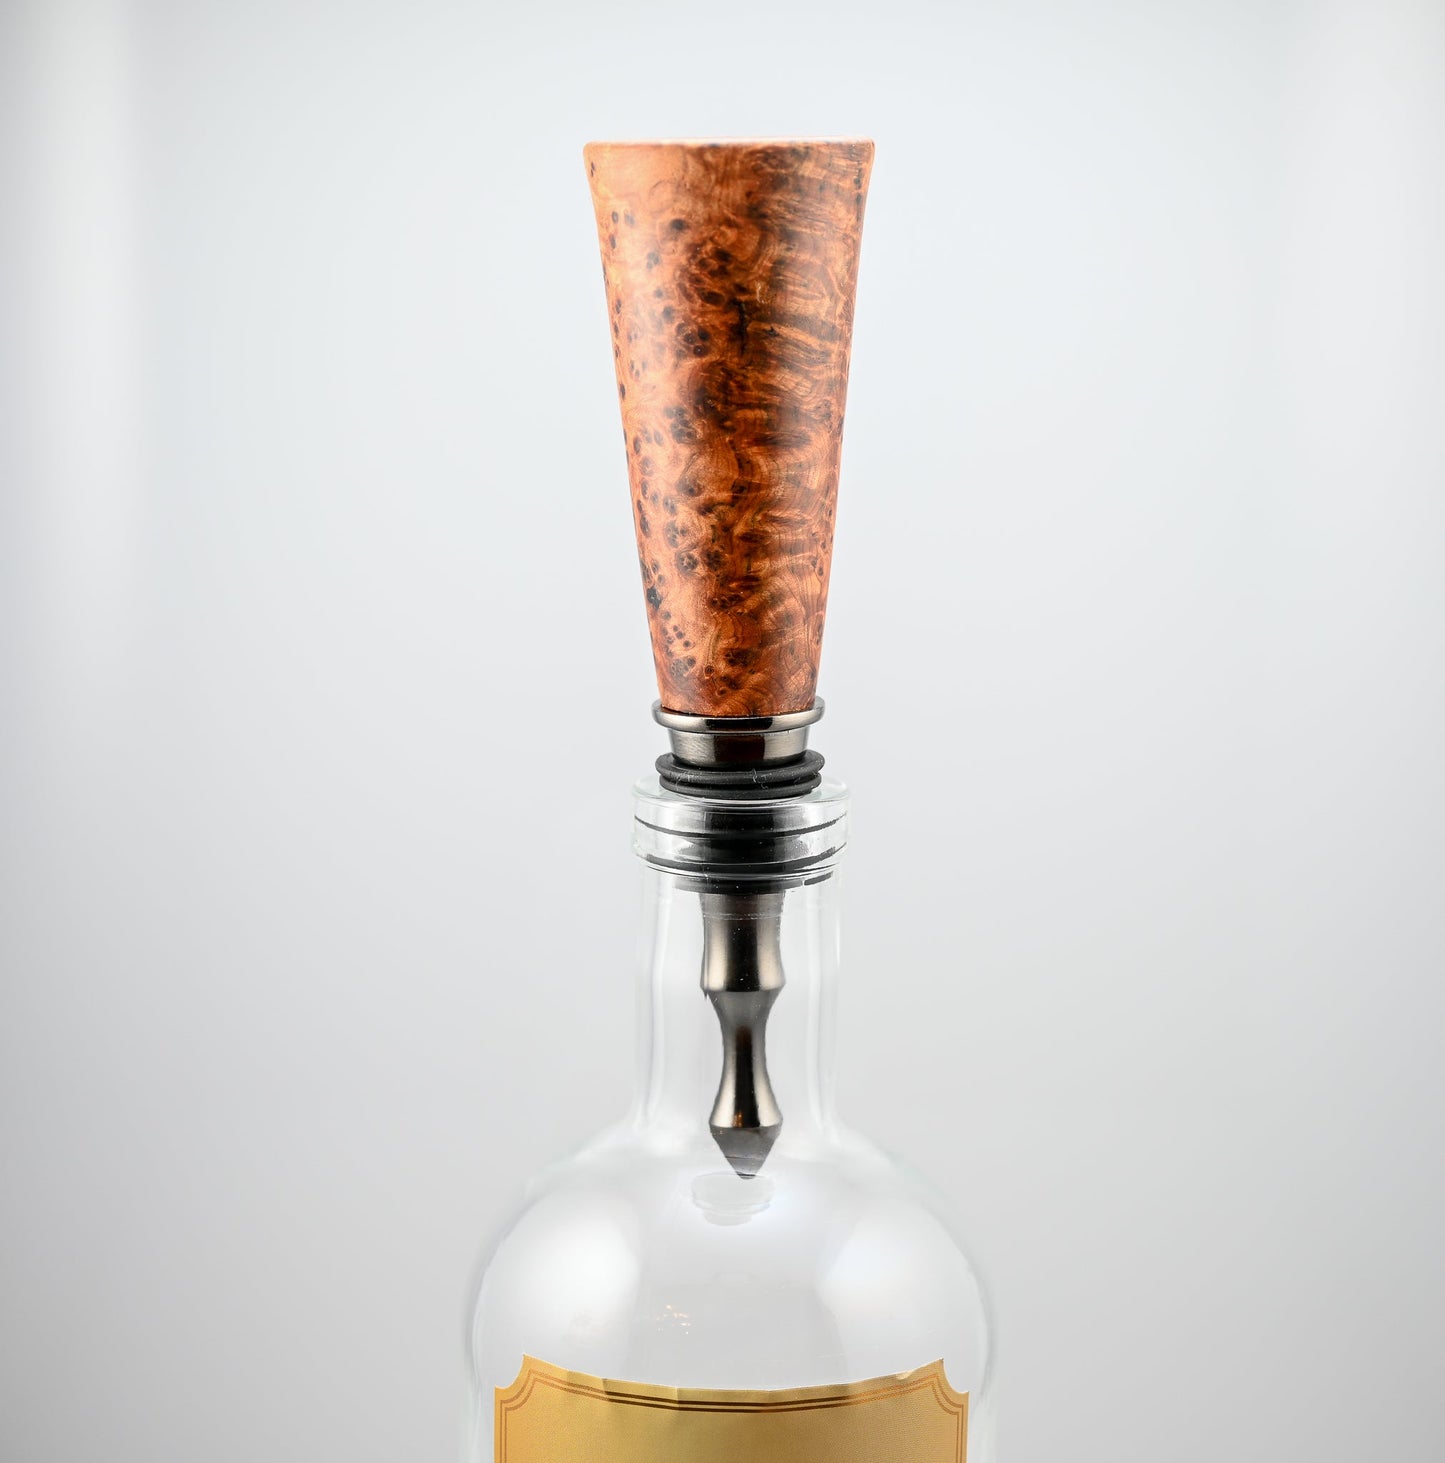 handmade thuya burl wood vintage style bottle stopper